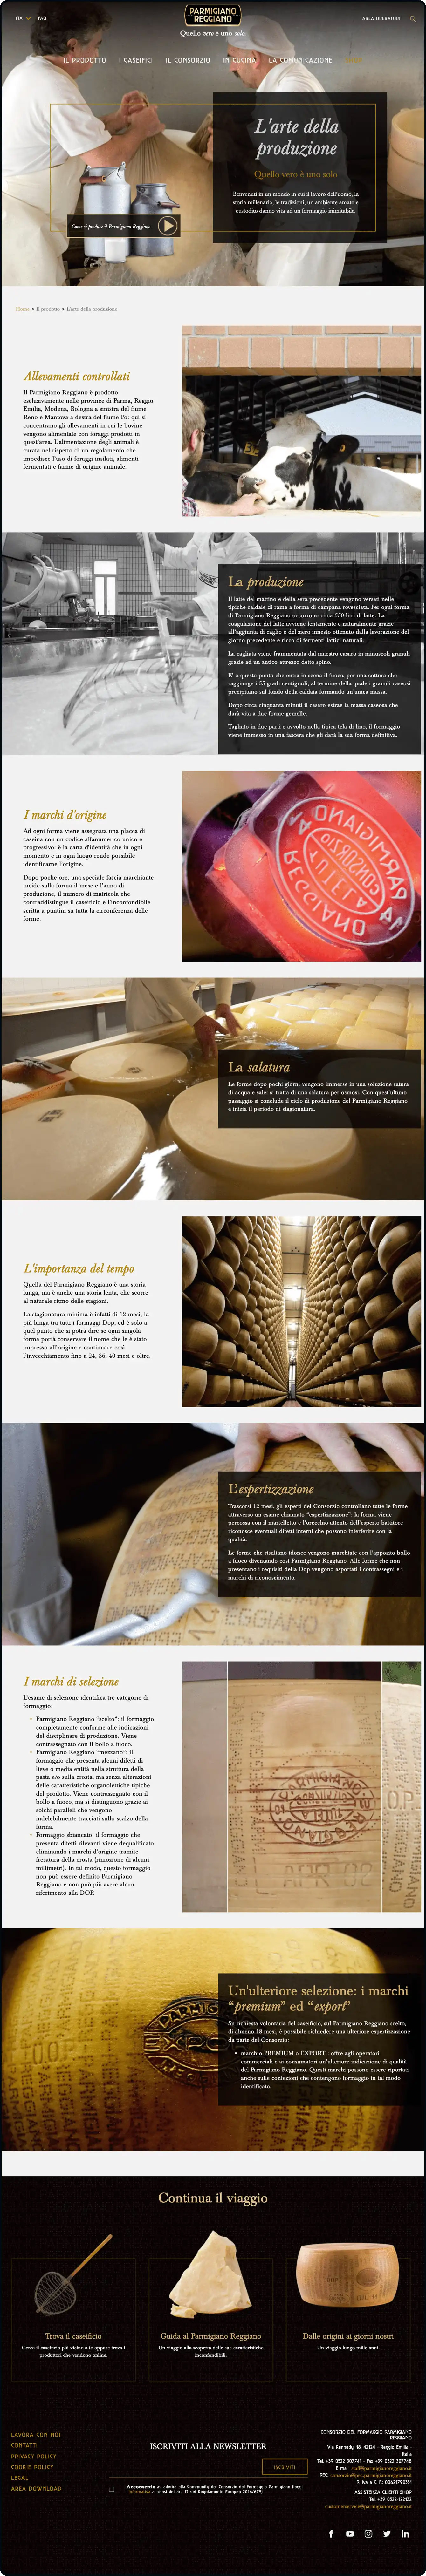 Sito istituzionale Parmigiano Reggiano homepage - Spotview